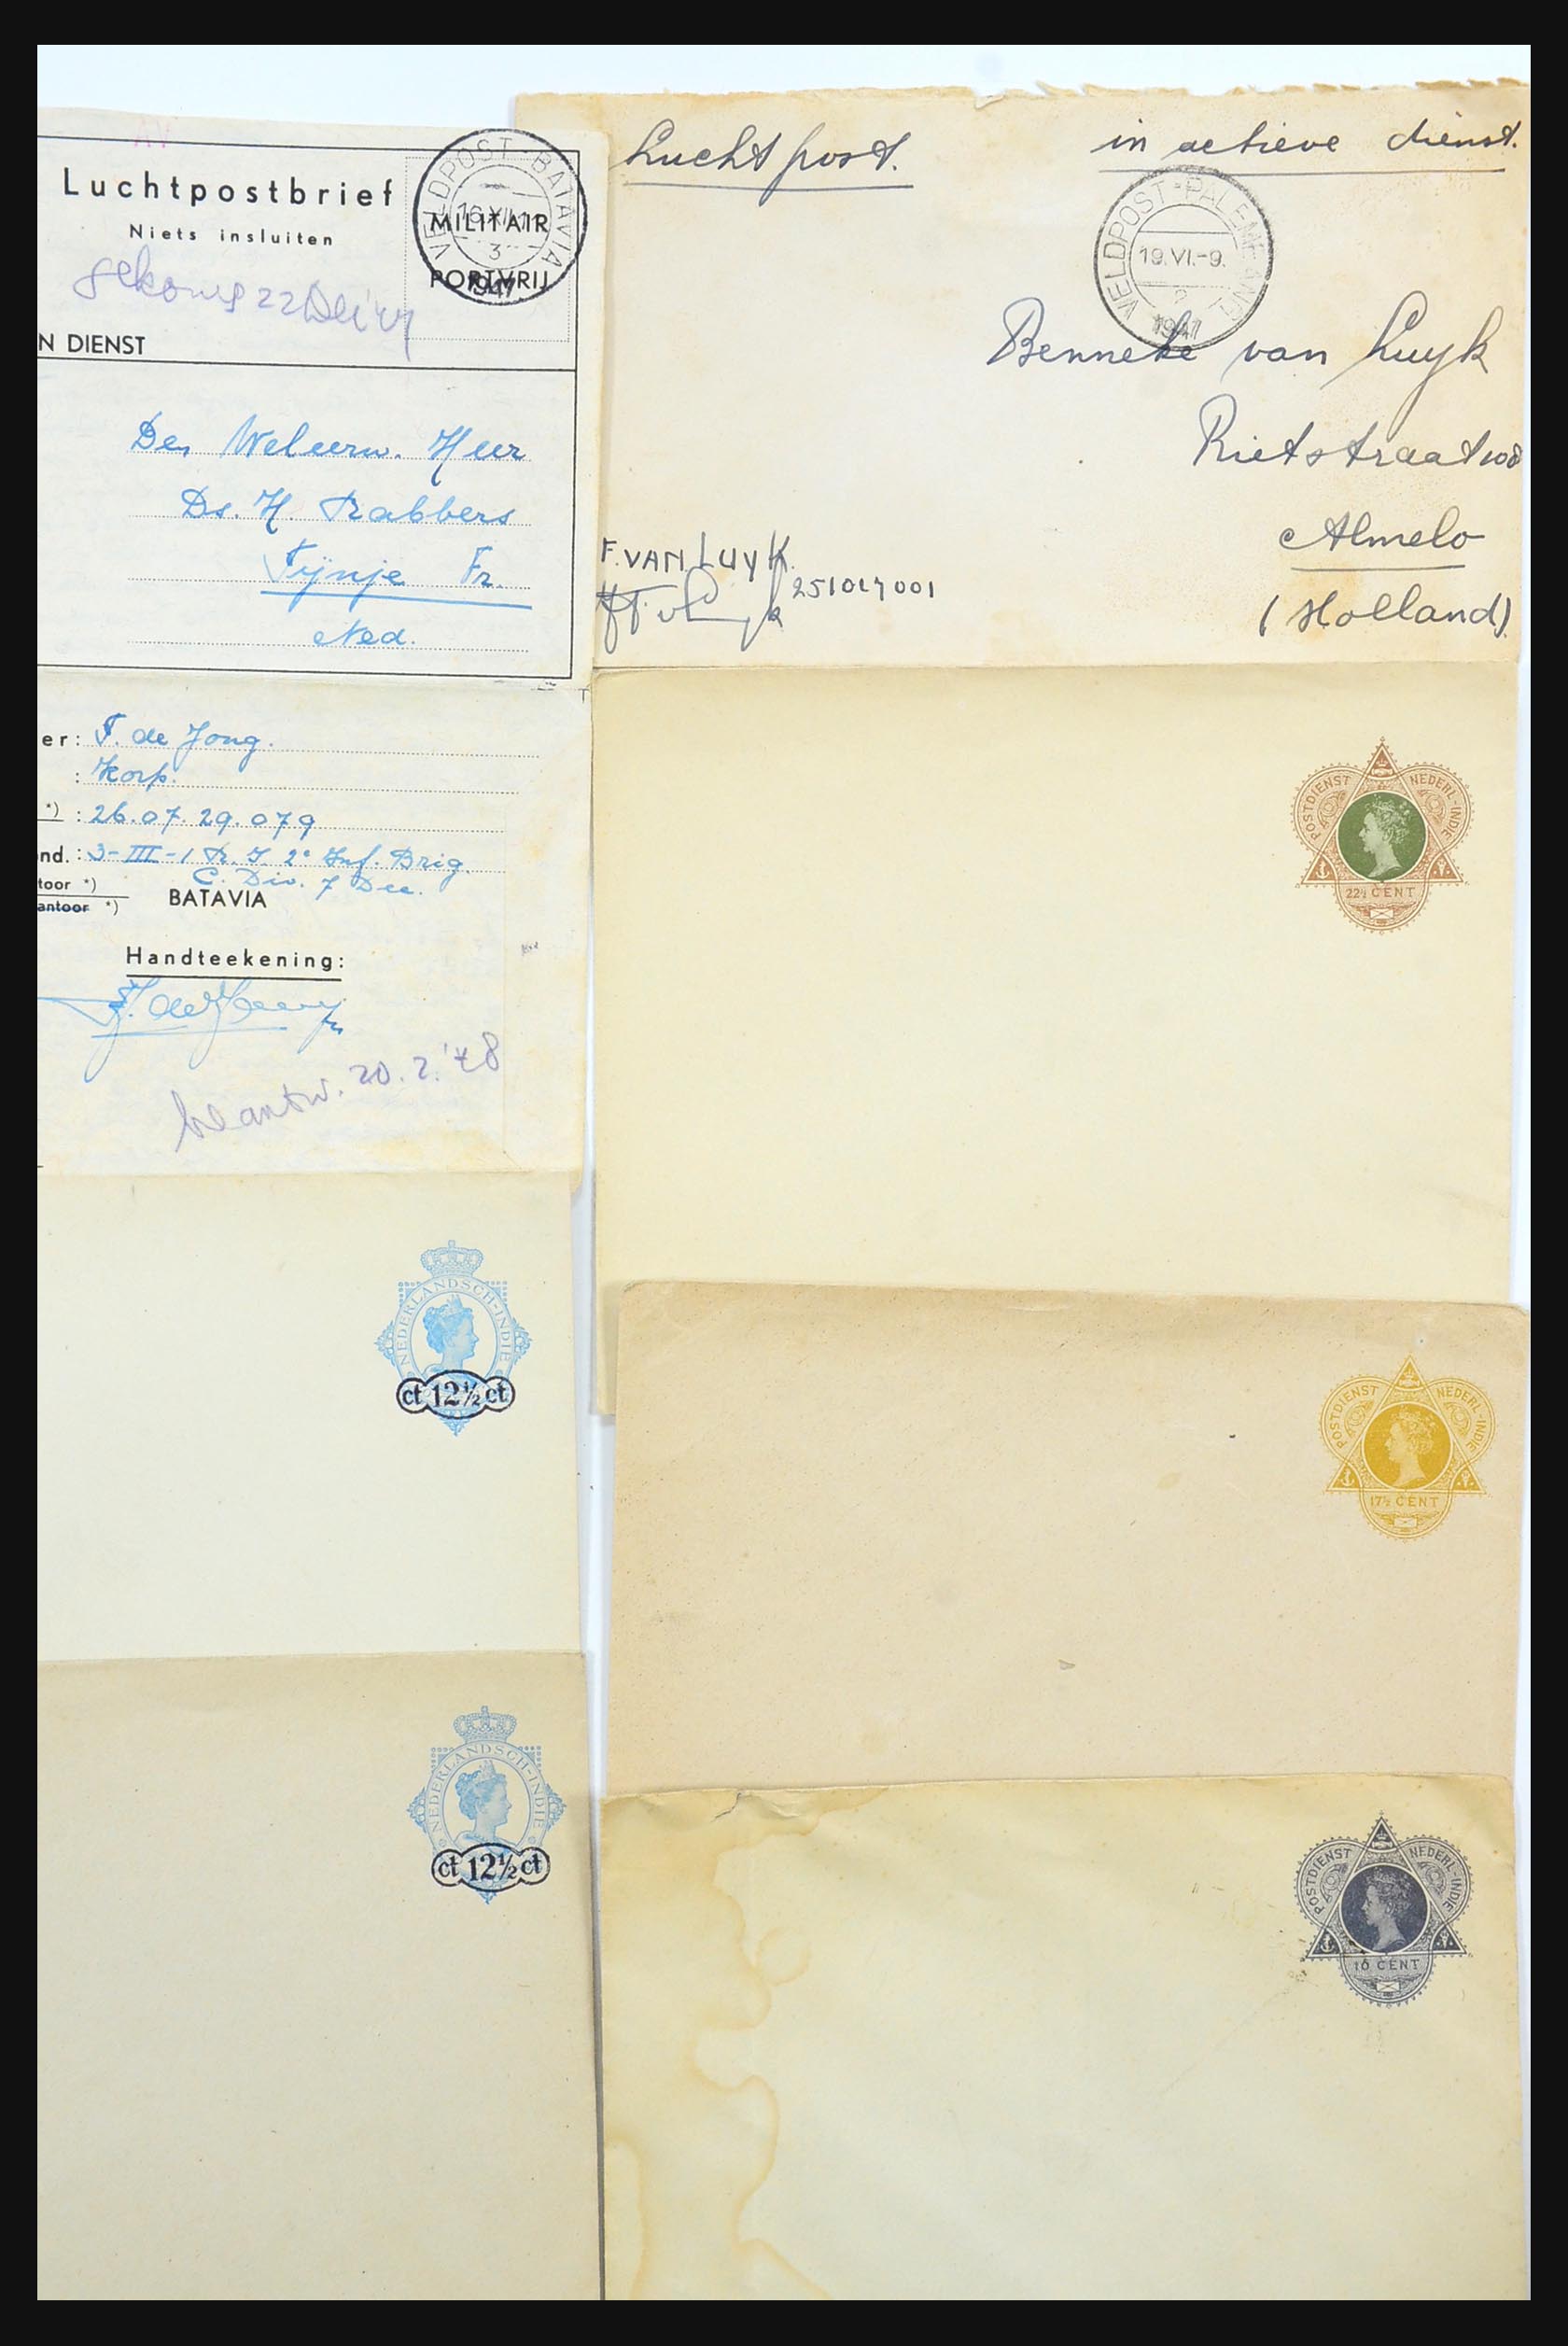 31361 039 - 31361 Nederlands Indië brieven 1880-1950.